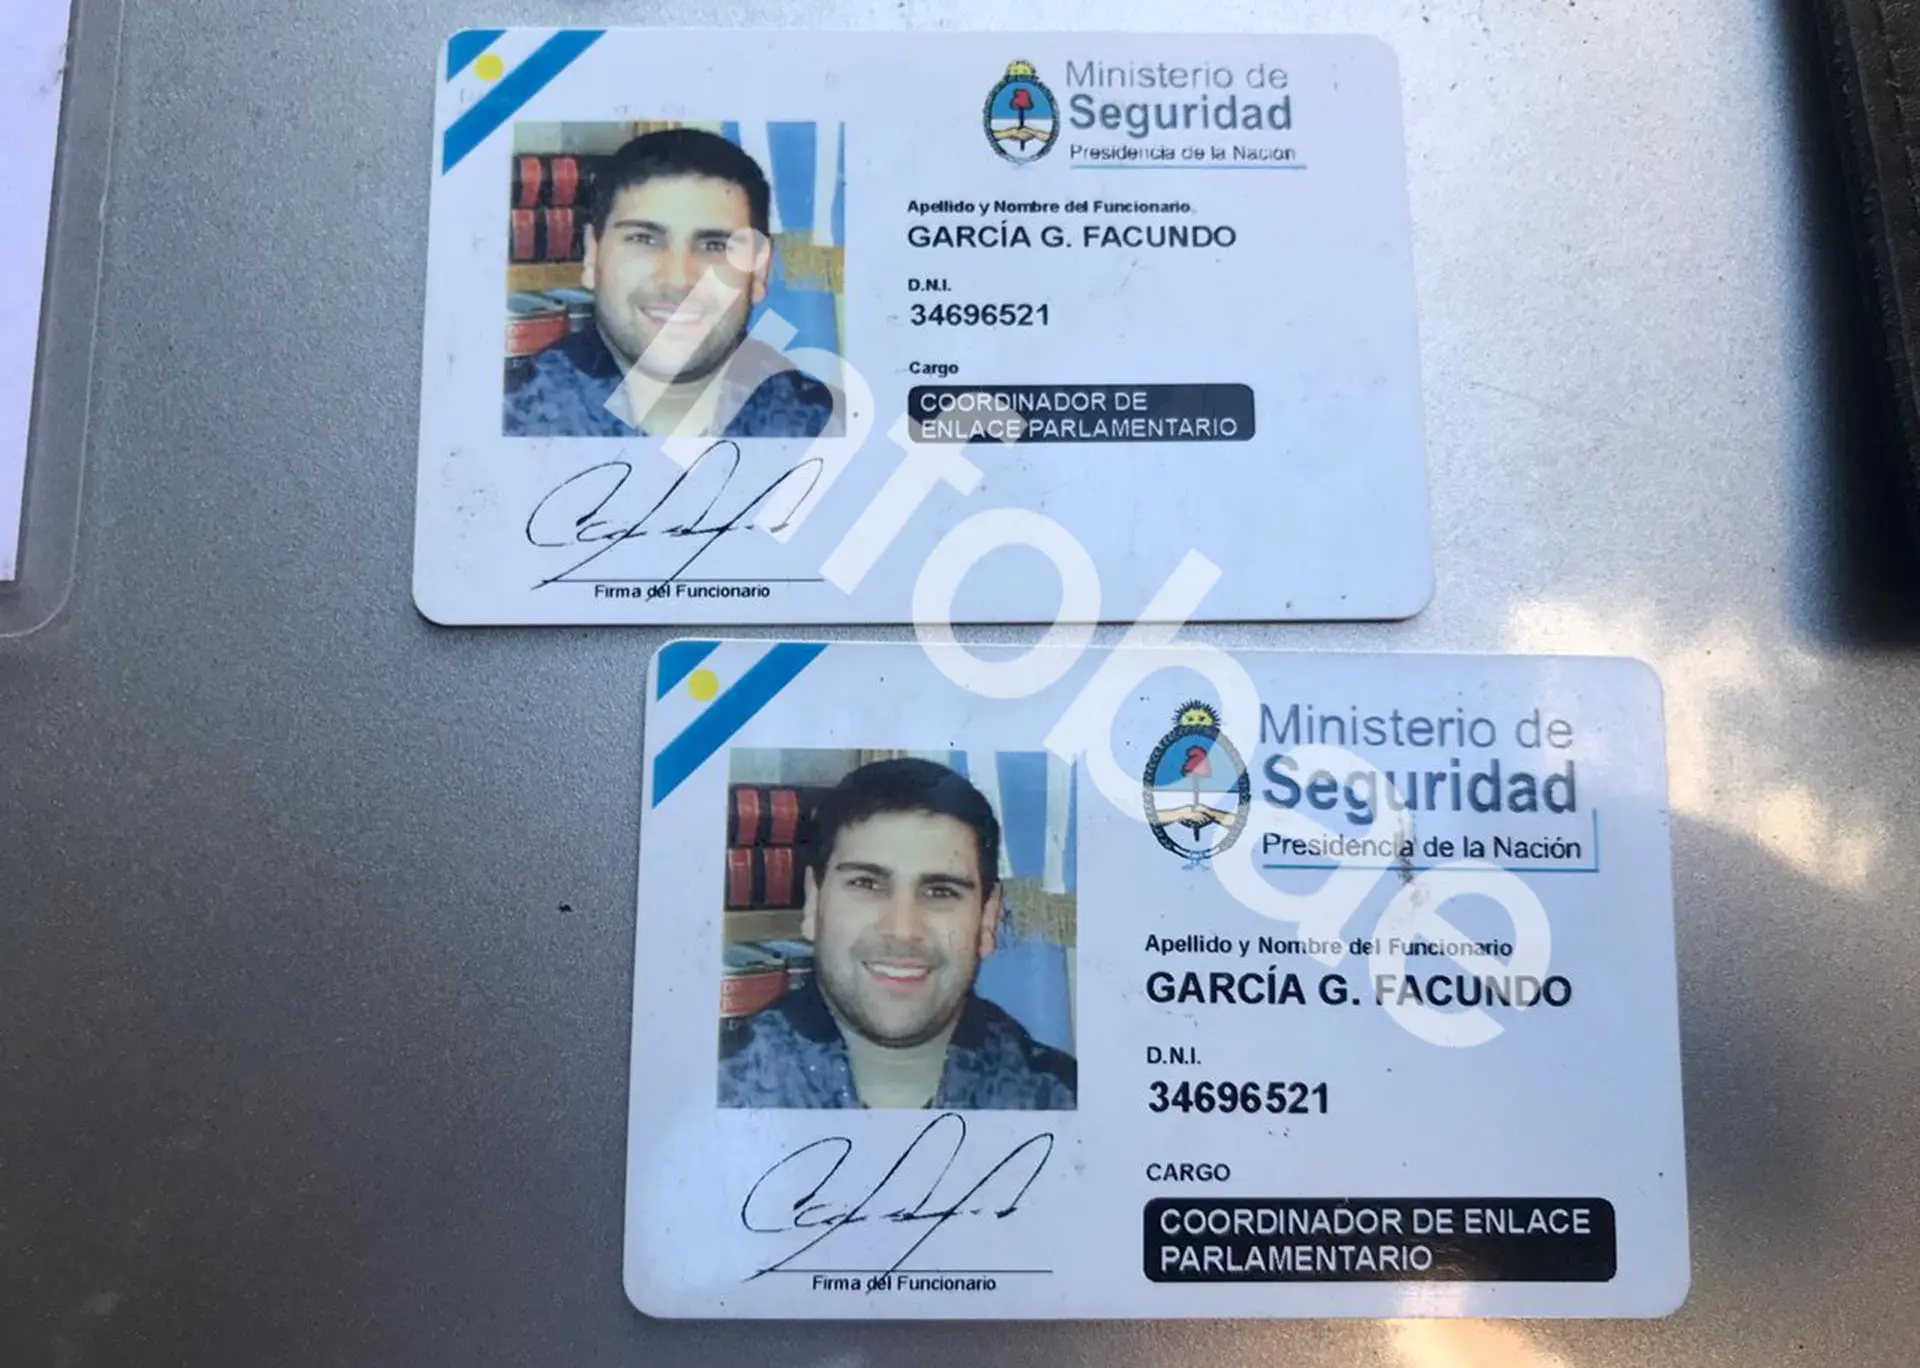 cedula de identidad servicio inteligencia argentina - Qué es un sistema biométrico de identificación